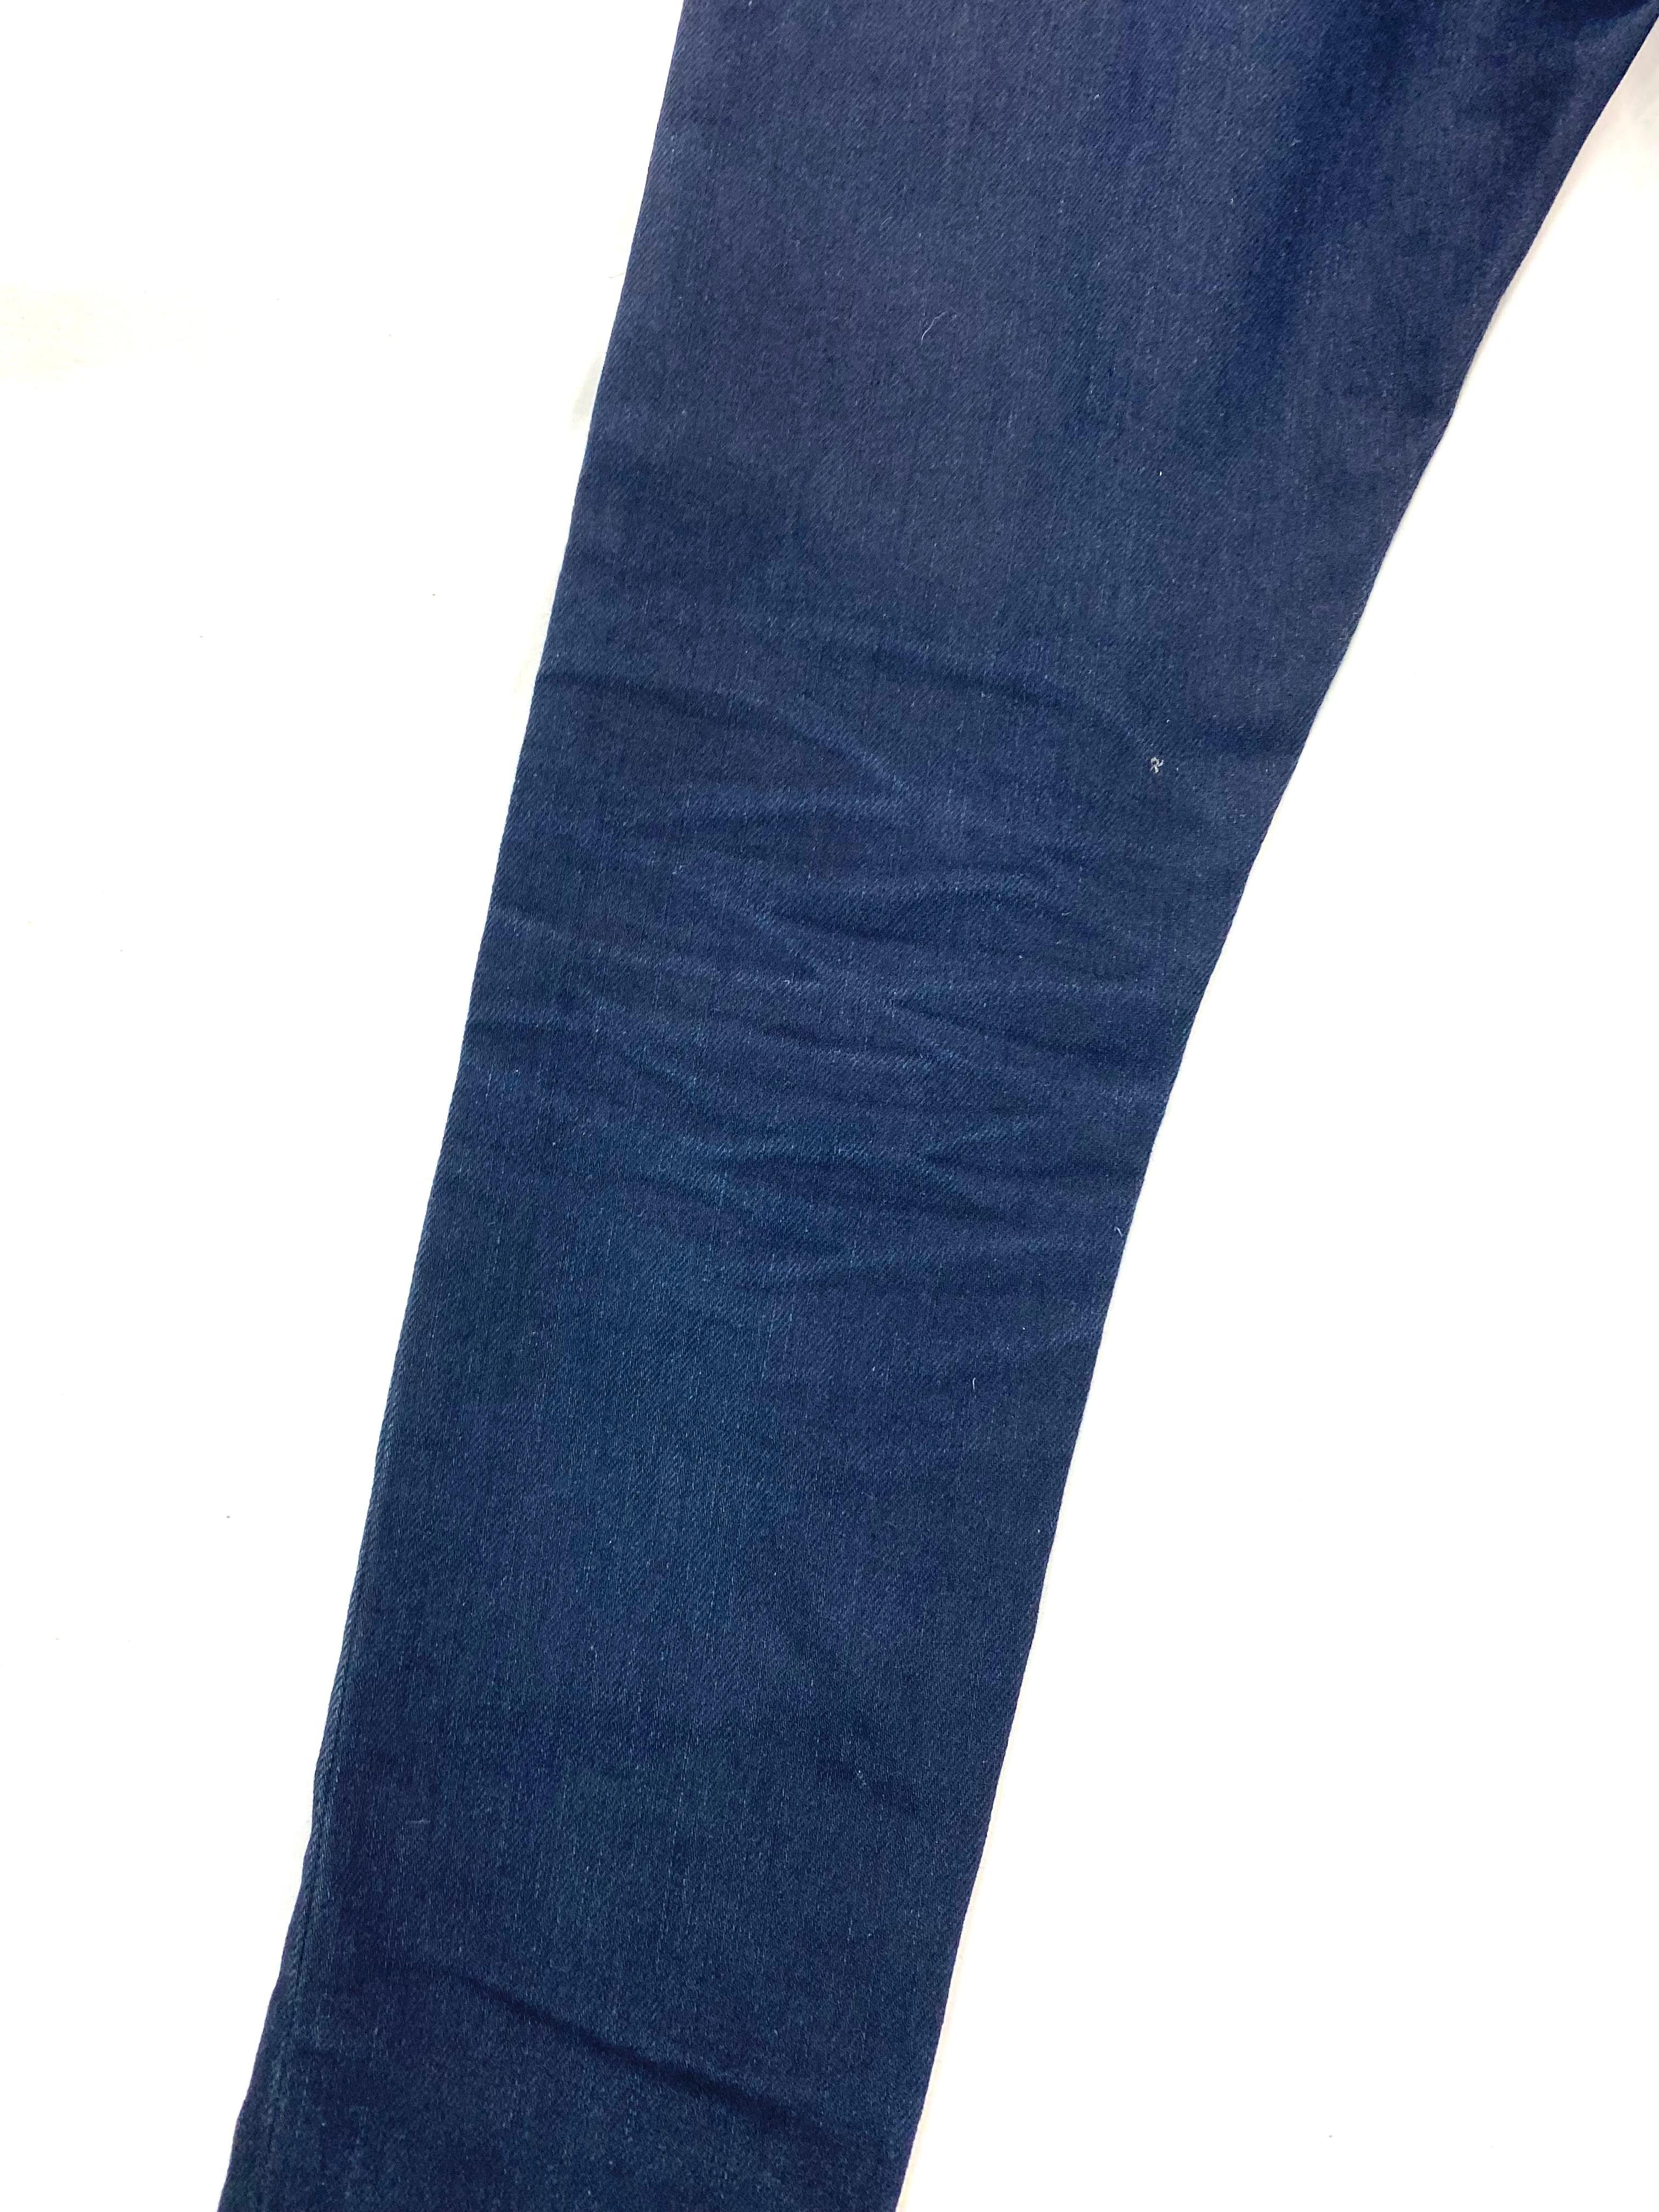 Black Acne Joy Sharp Blue Denim Jeans Pants, Size 25/32 For Sale